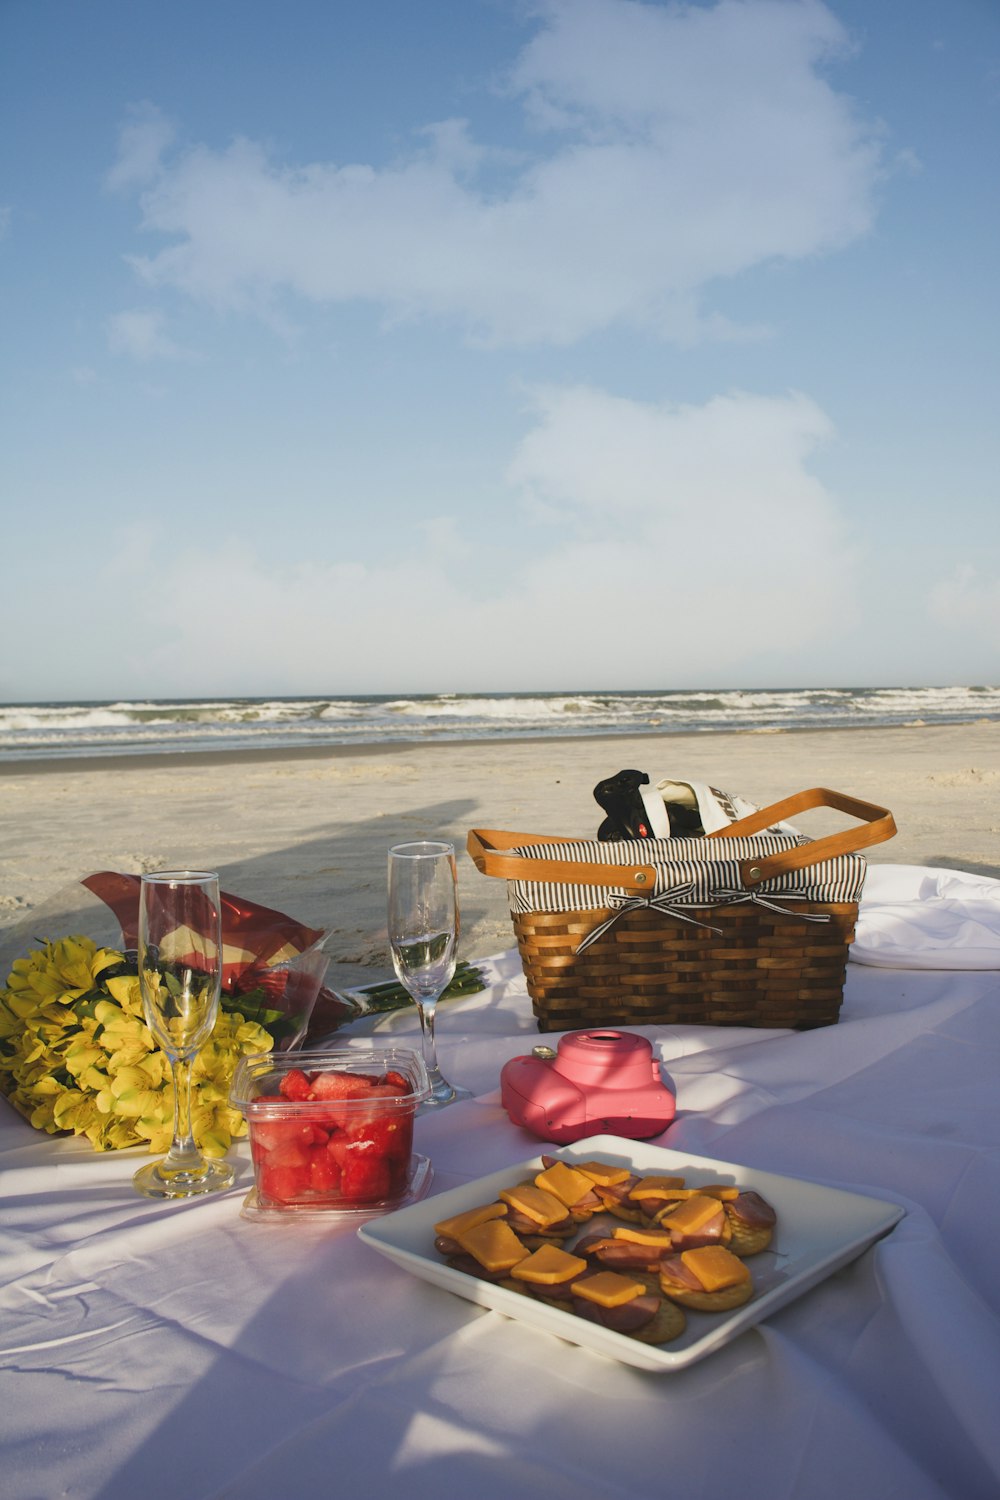 una mesa con comida y vasos en ella junto a una playa